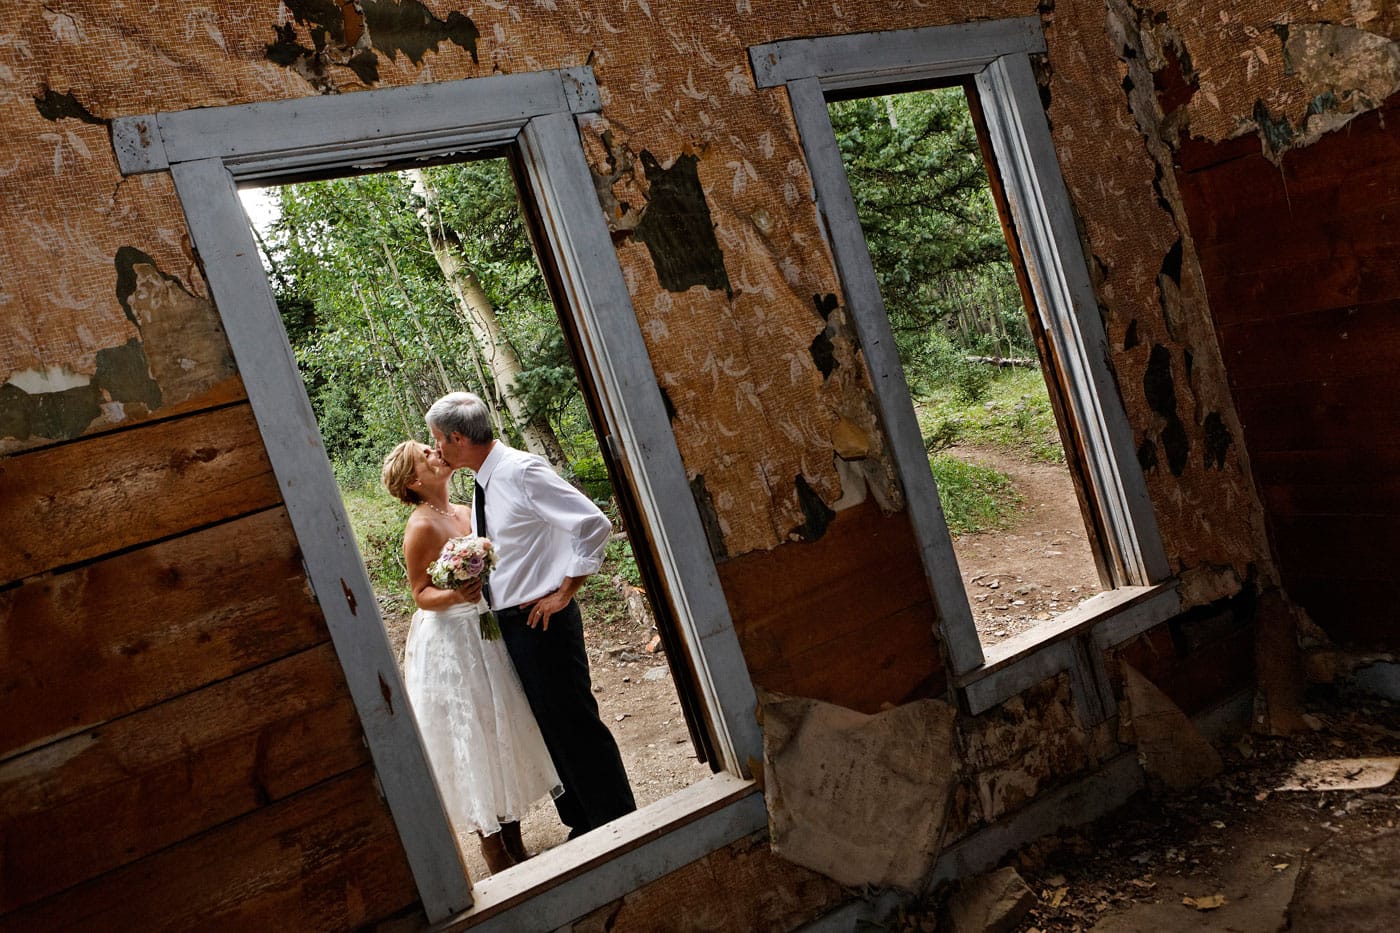 Ouray Colorado Wedding Photography